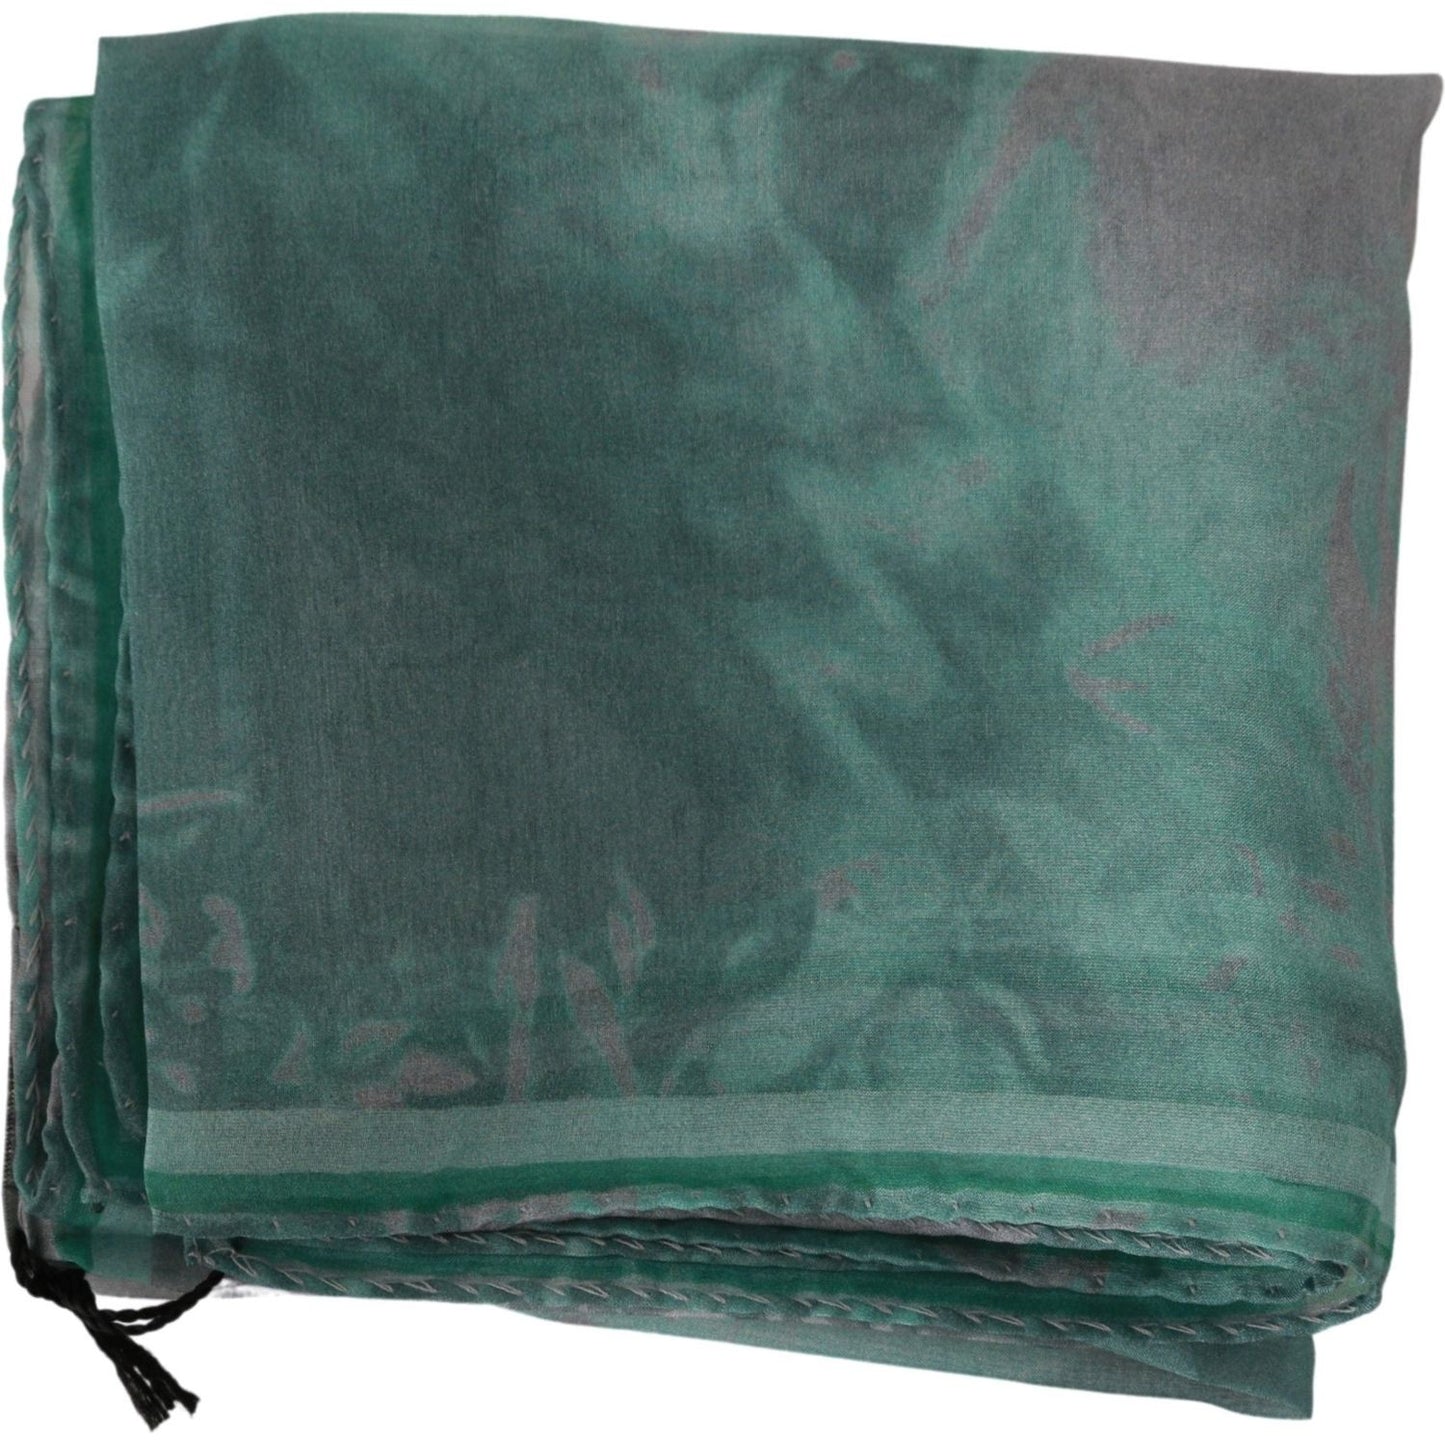 Costume National Elegant Silk Green Printed Scarf green-silk-shawl-foulard-wrap-scarf-1